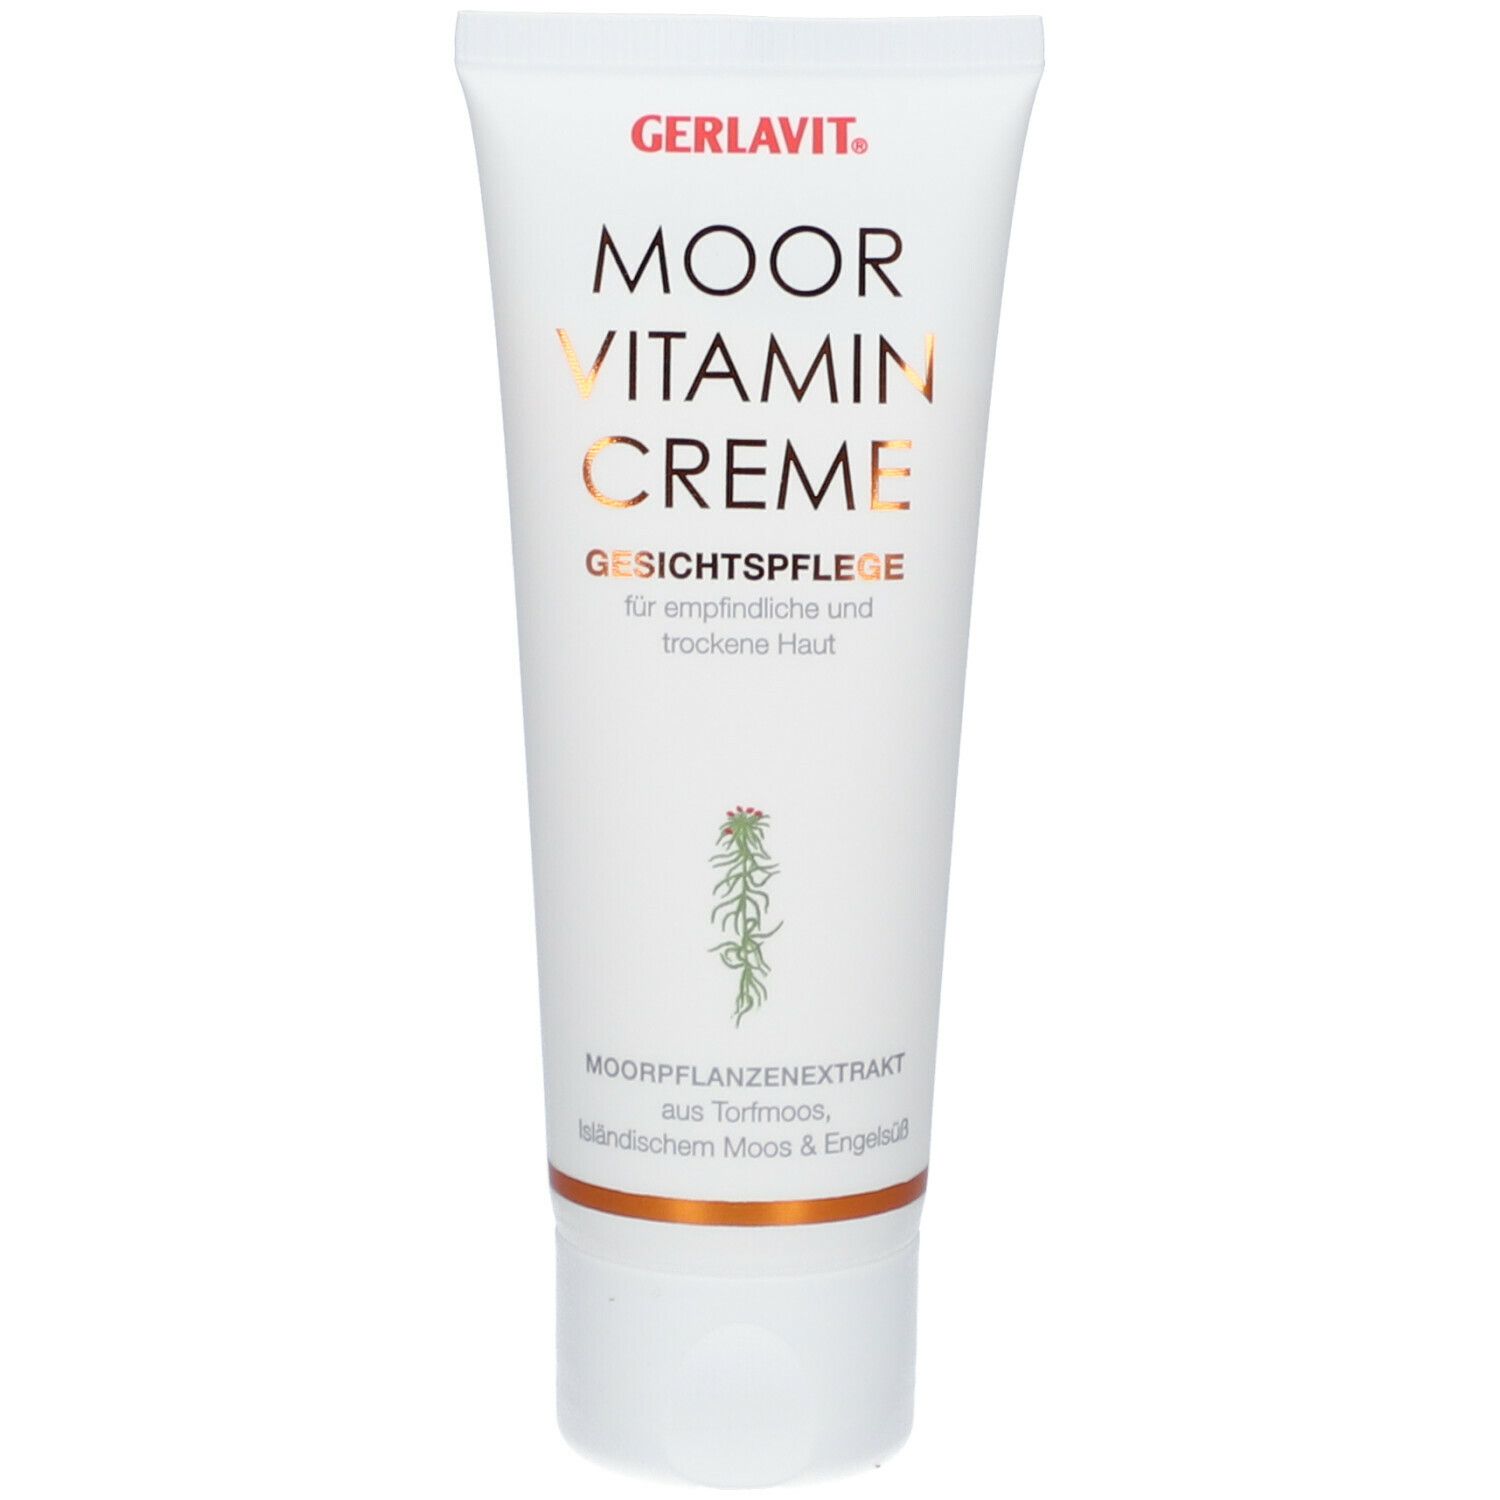 GERLAVIT® Moor-Vitamin-Creme